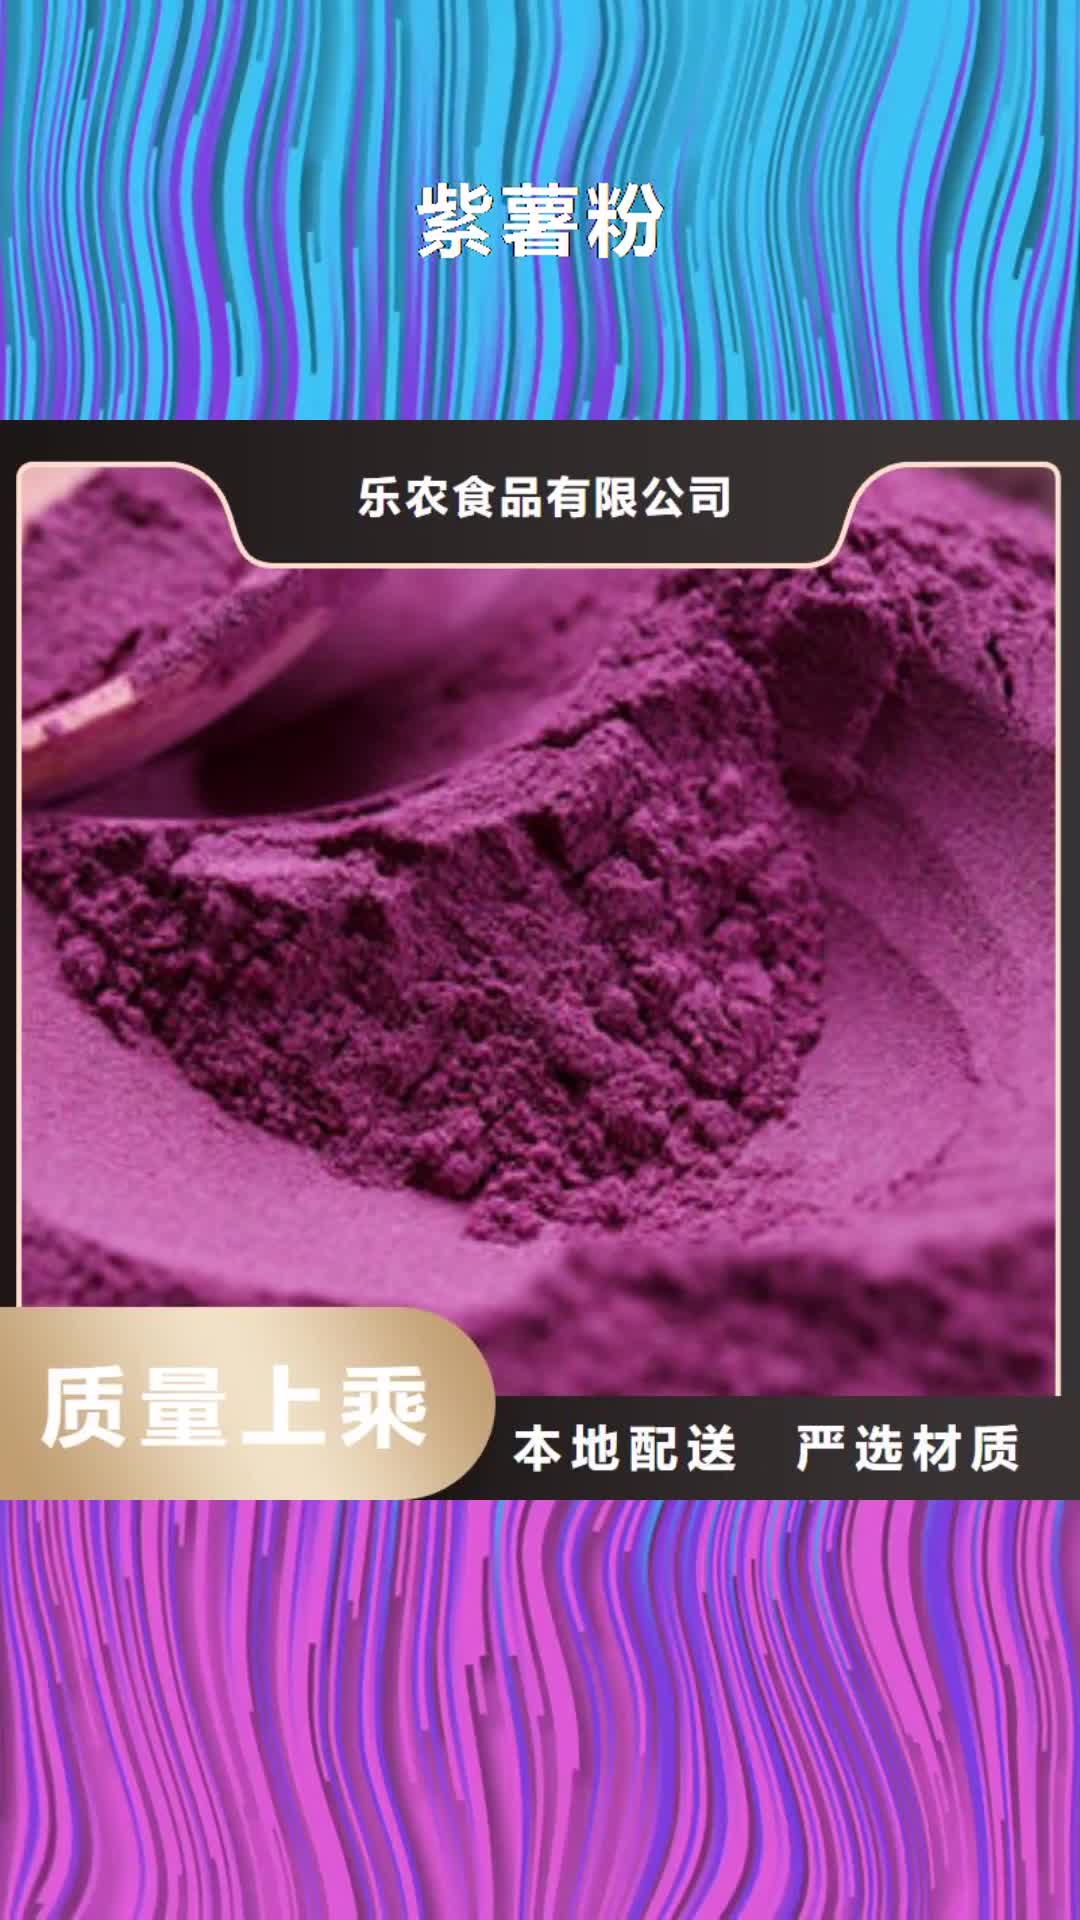 河南 紫薯粉,【胡萝卜粉】大量现货供应